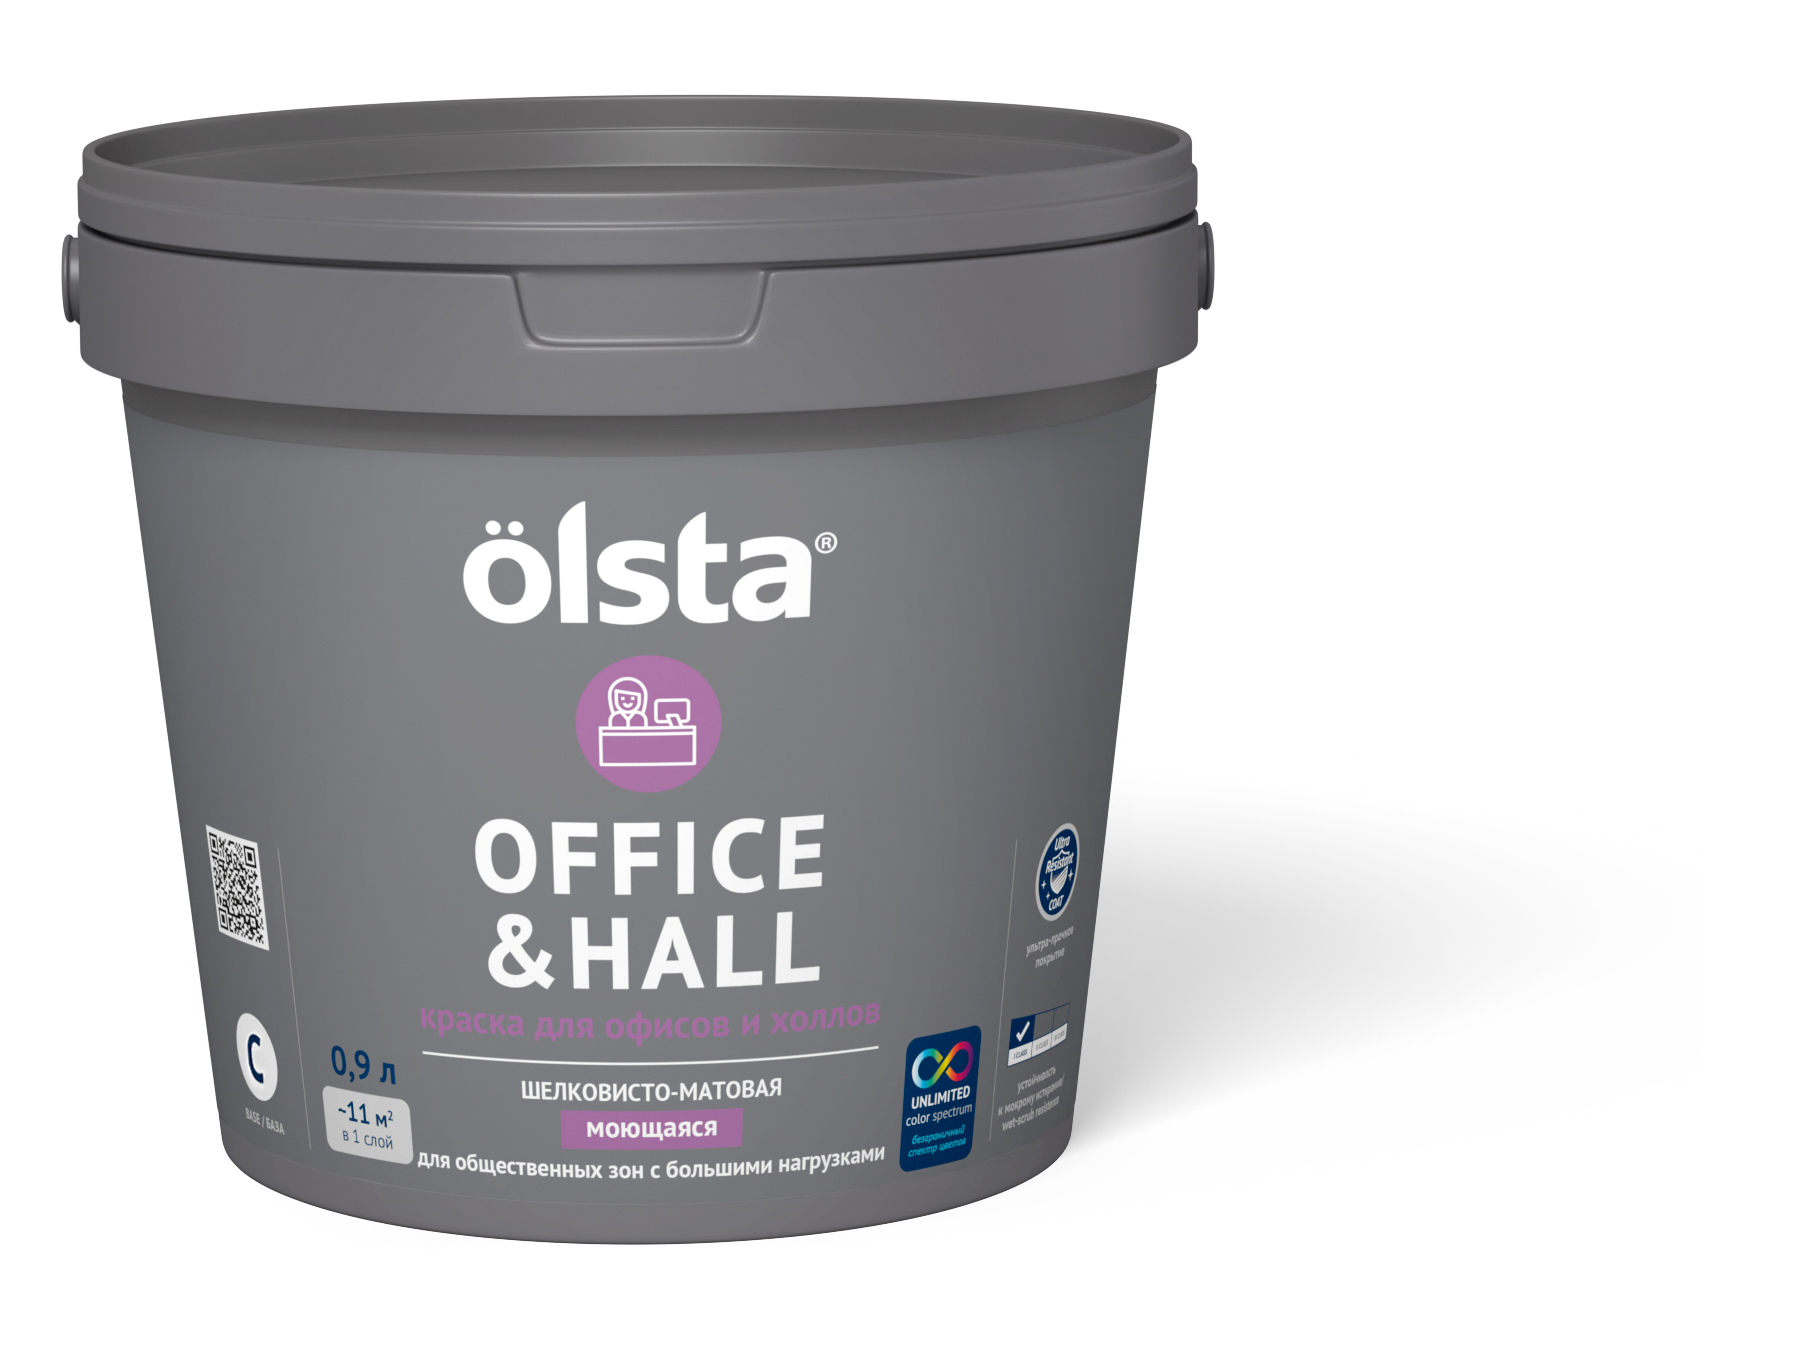 Краска для офисов и холлов Olsta Office&hall База C 0,9 л (только под колеровку) краска finncolor oasis hall